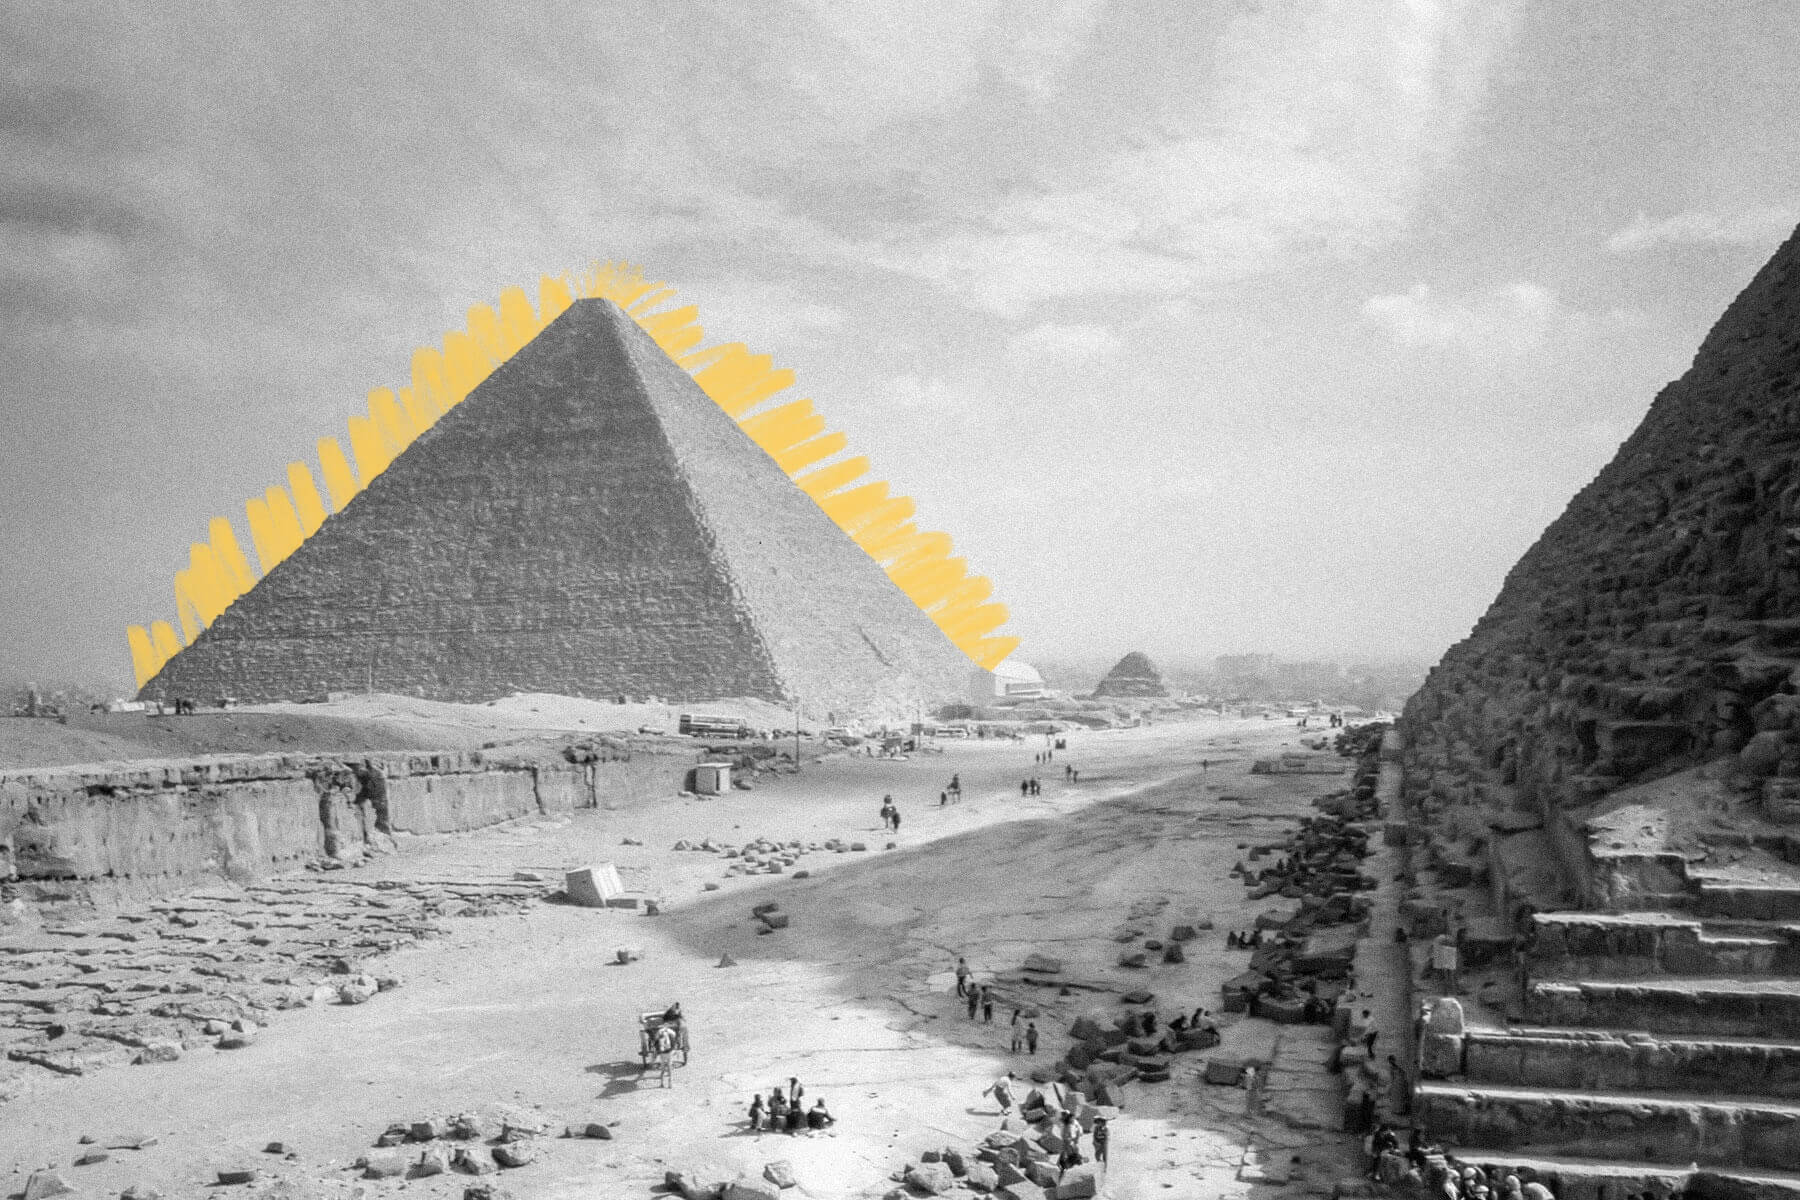 Ancient Pyramids of Giza